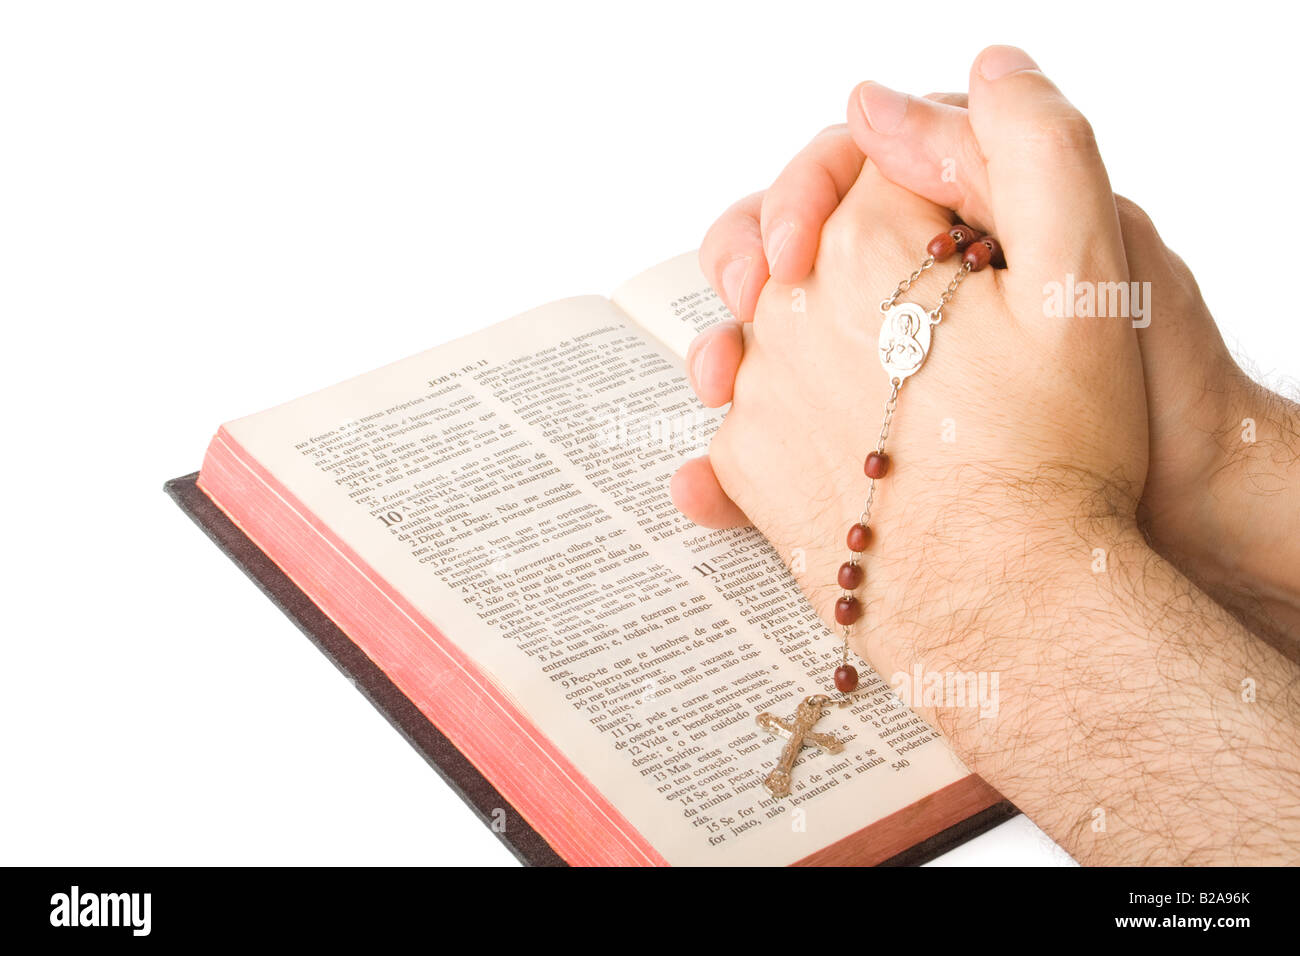 Fermé les mains en prière avec un rosaire isolé sur fond blanc Banque D'Images